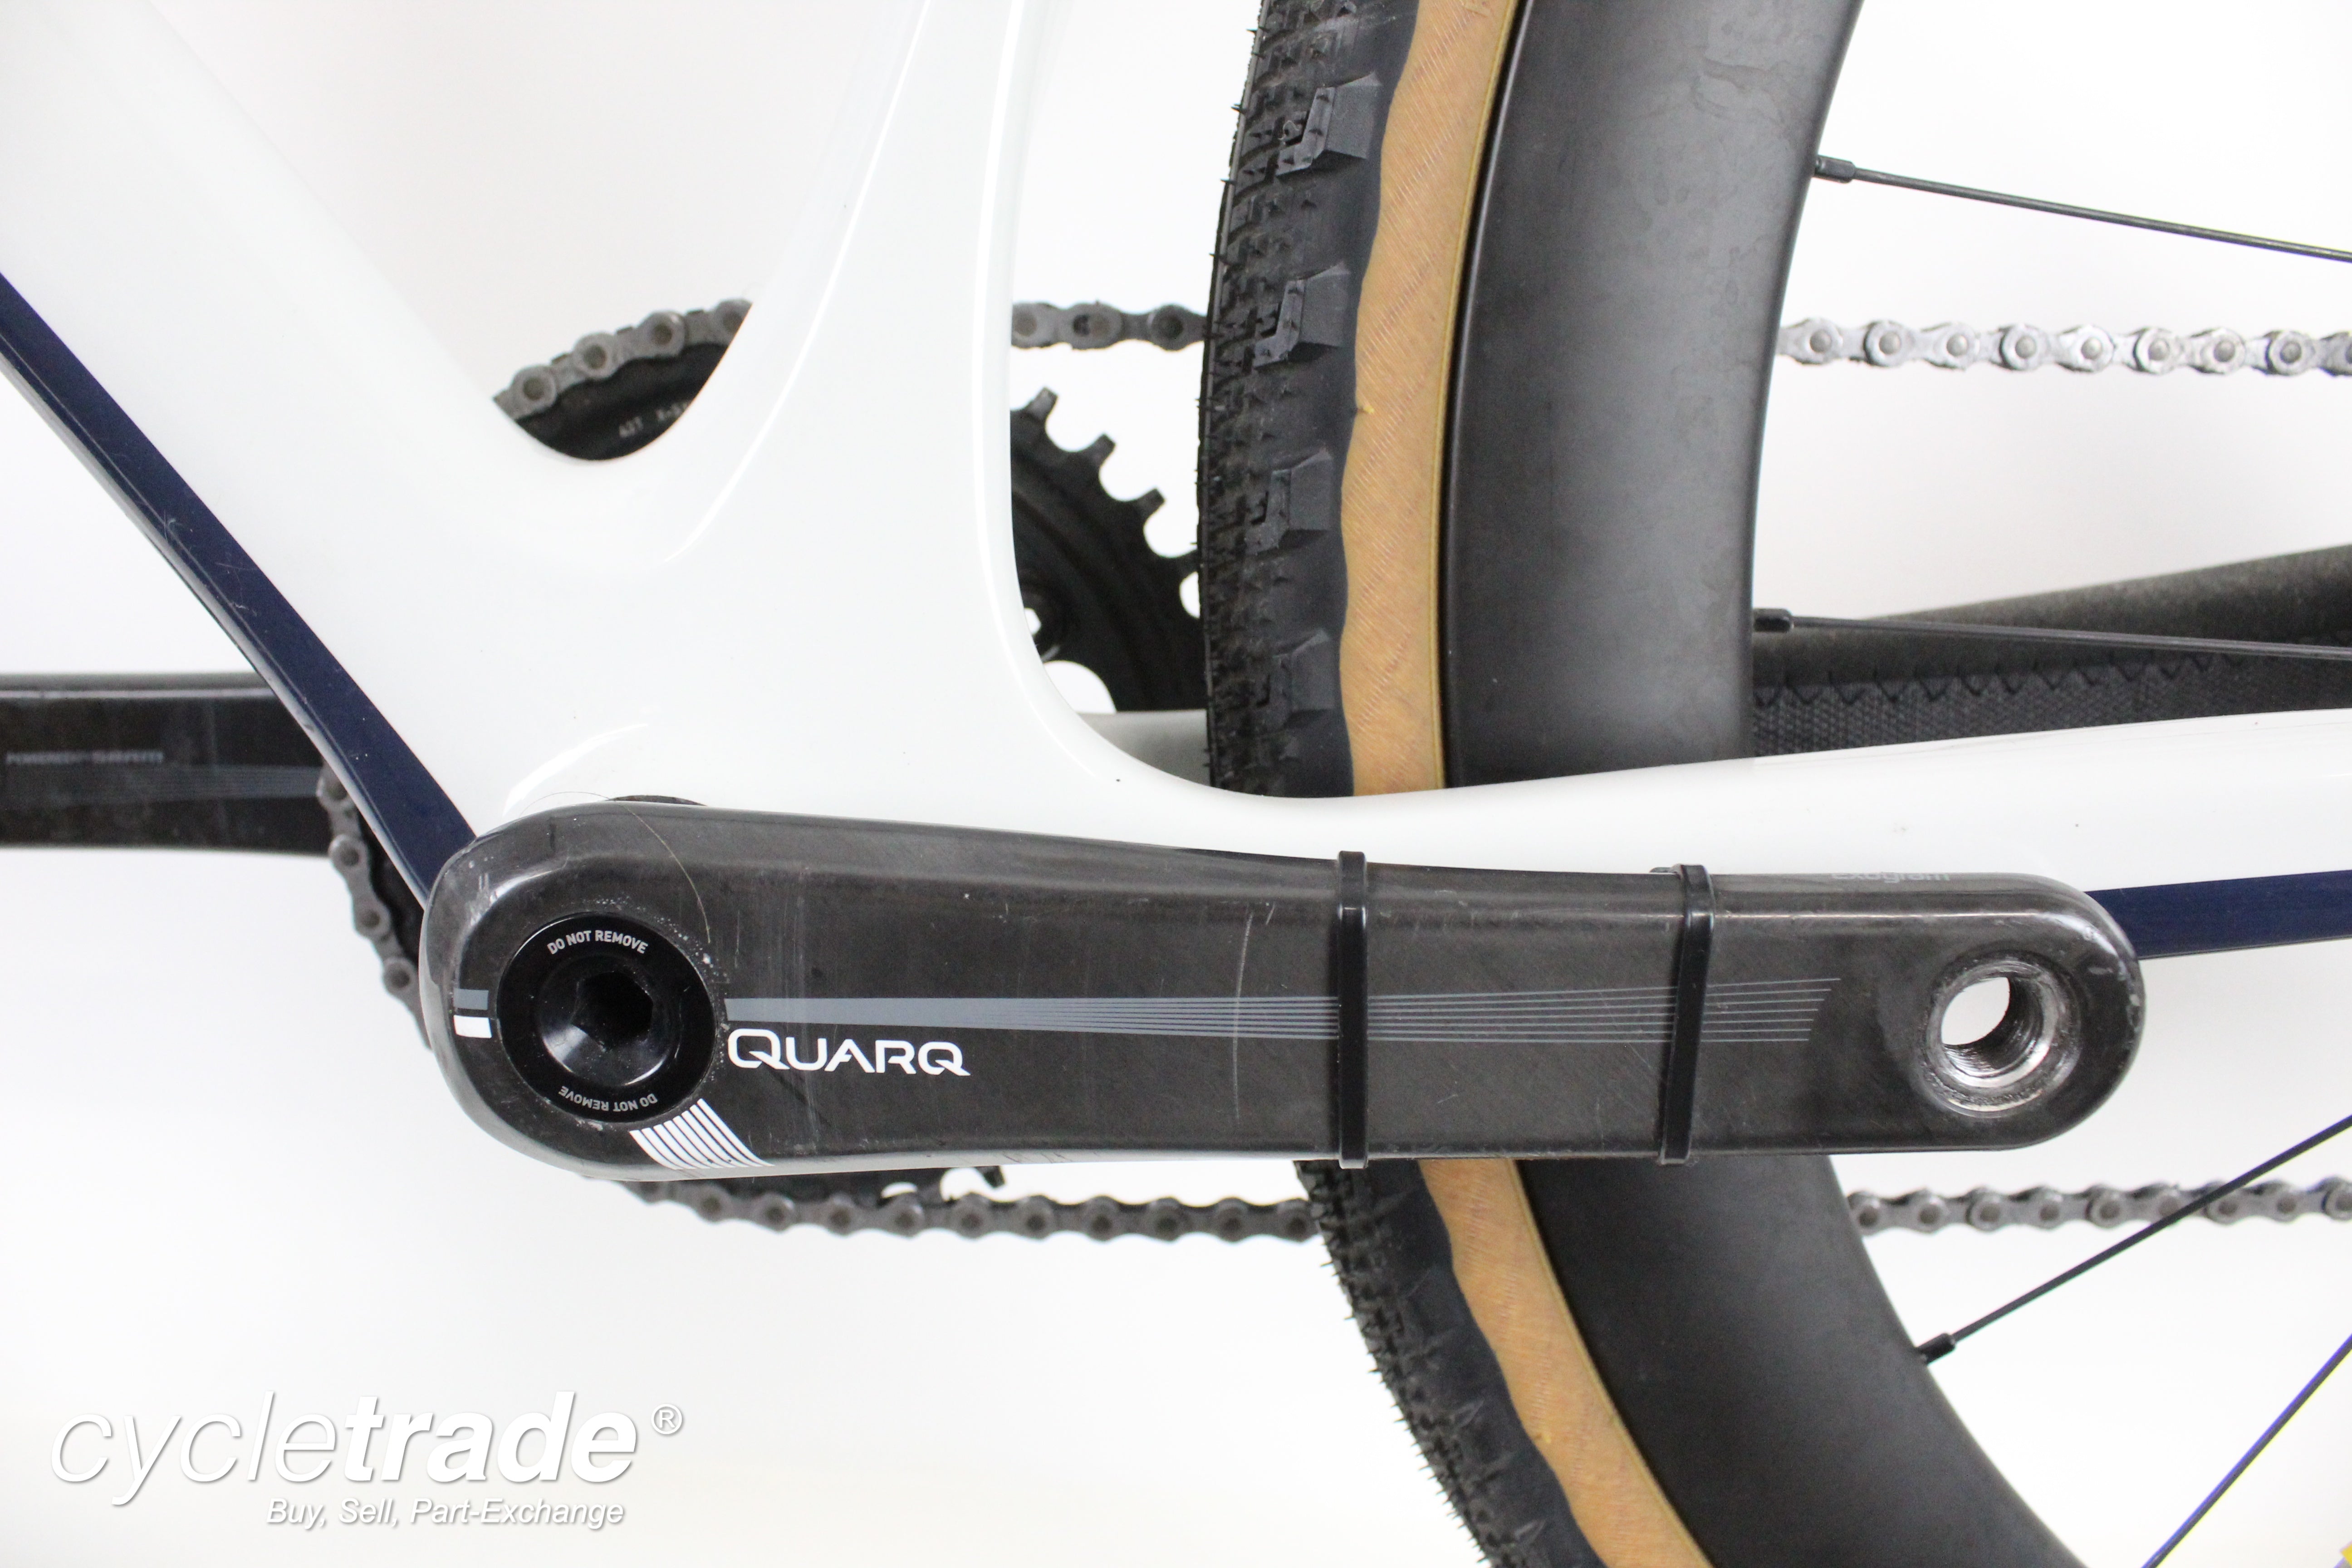 2018 Gravel Bike - Genesis Vapour SRAM Force 56cm Custom Build- Mint Condition